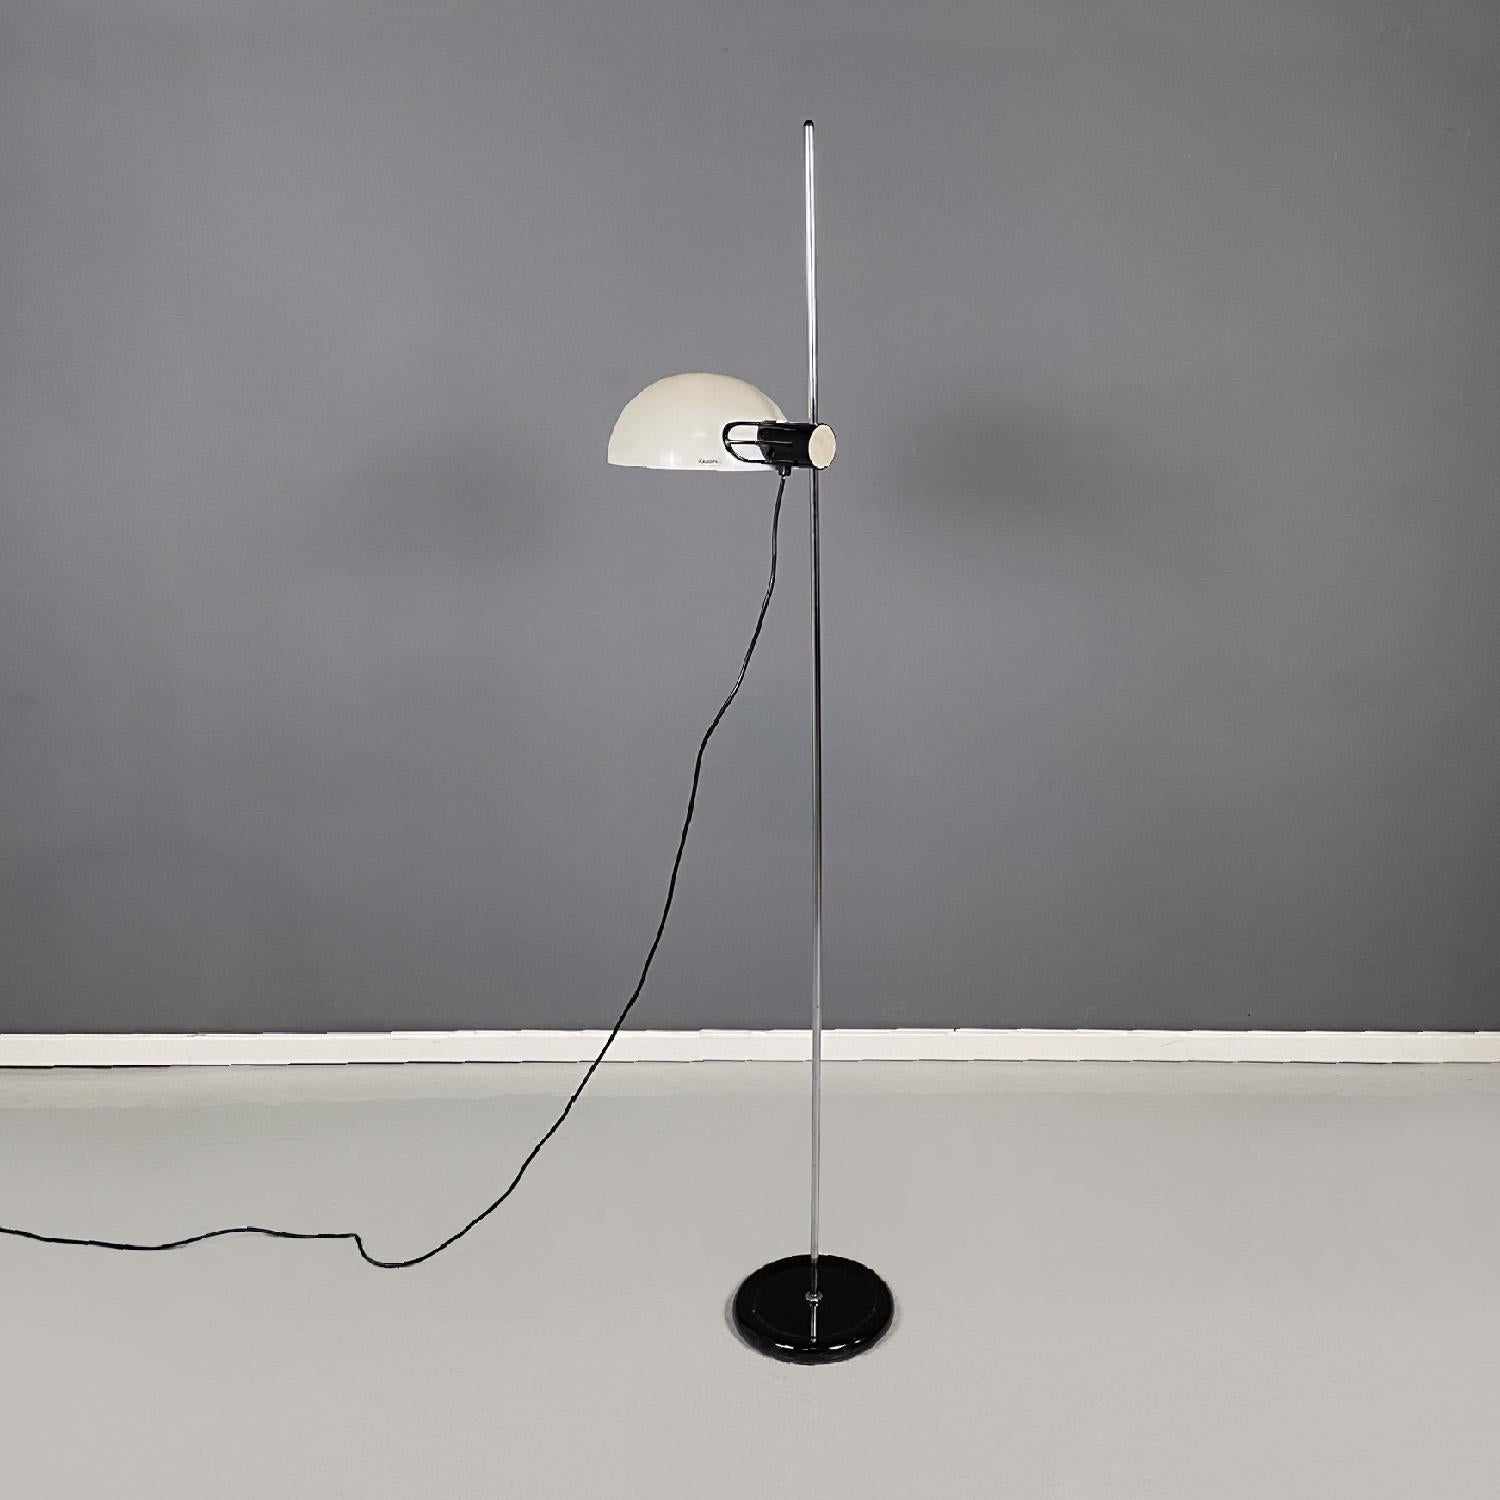 Modern Italian modern chromed metal white black plastic floor lamp by Guzzini, 1970s For Sale